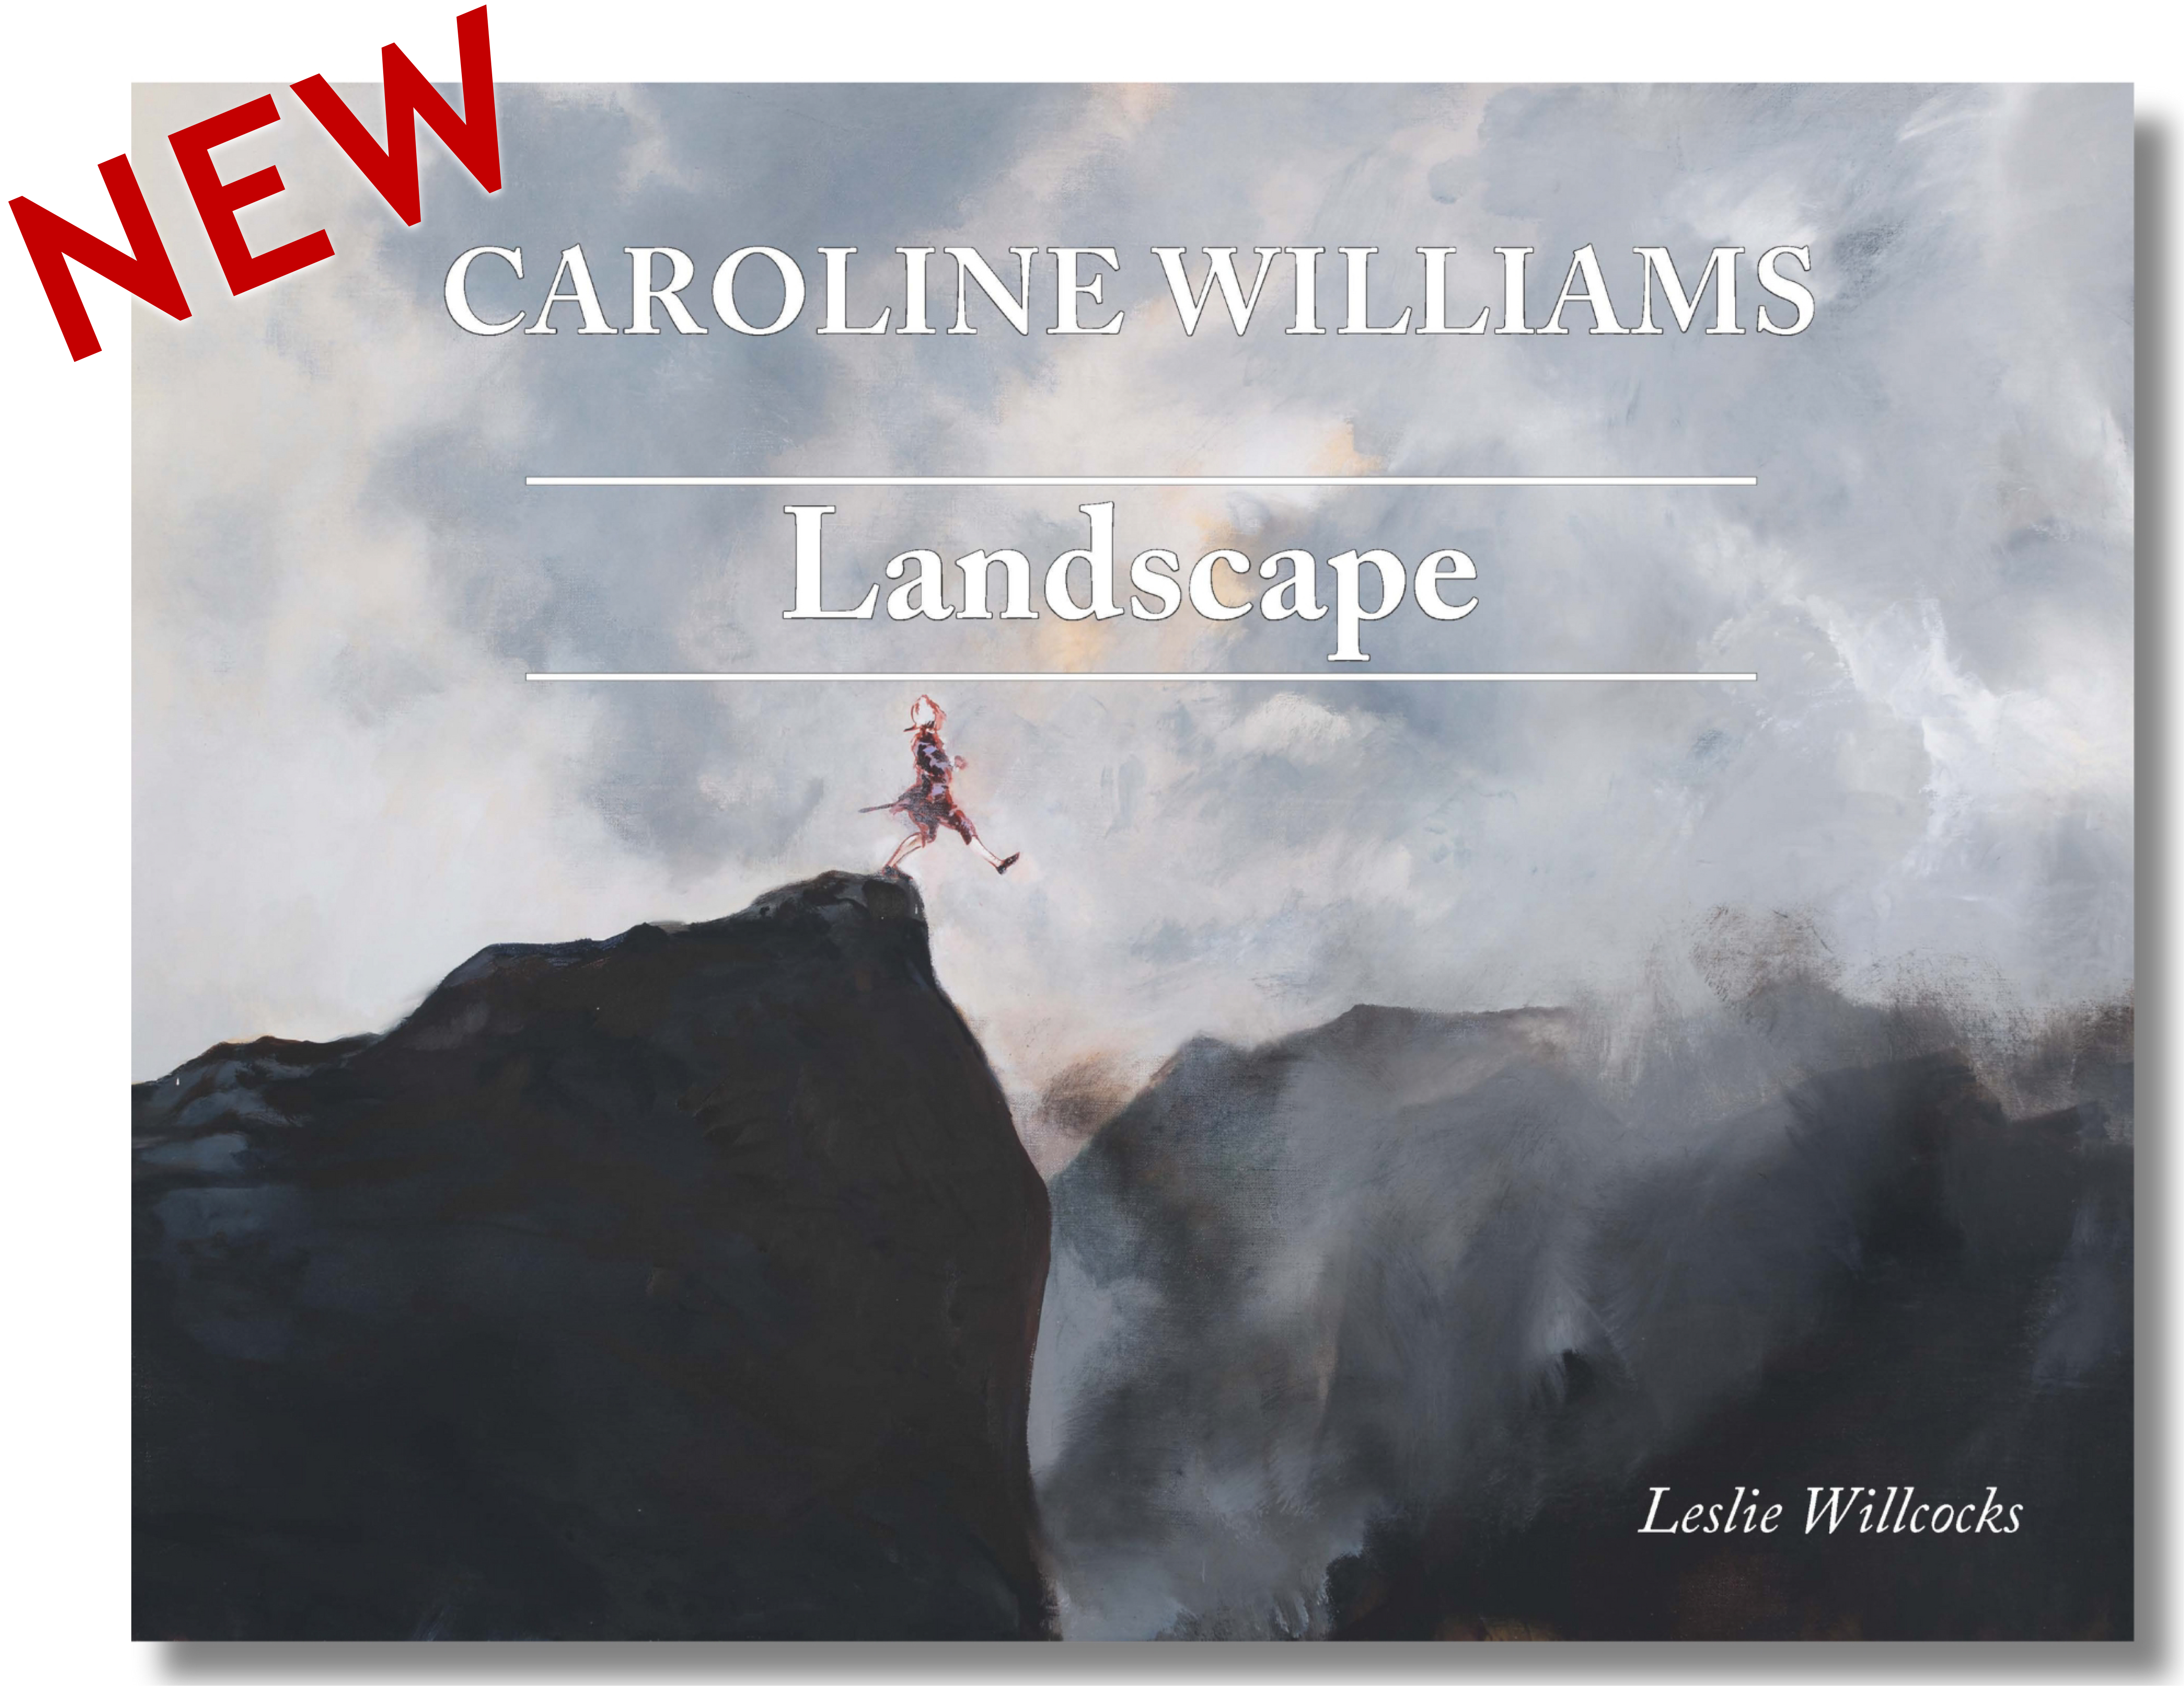 Caroline williams 'Landscape'